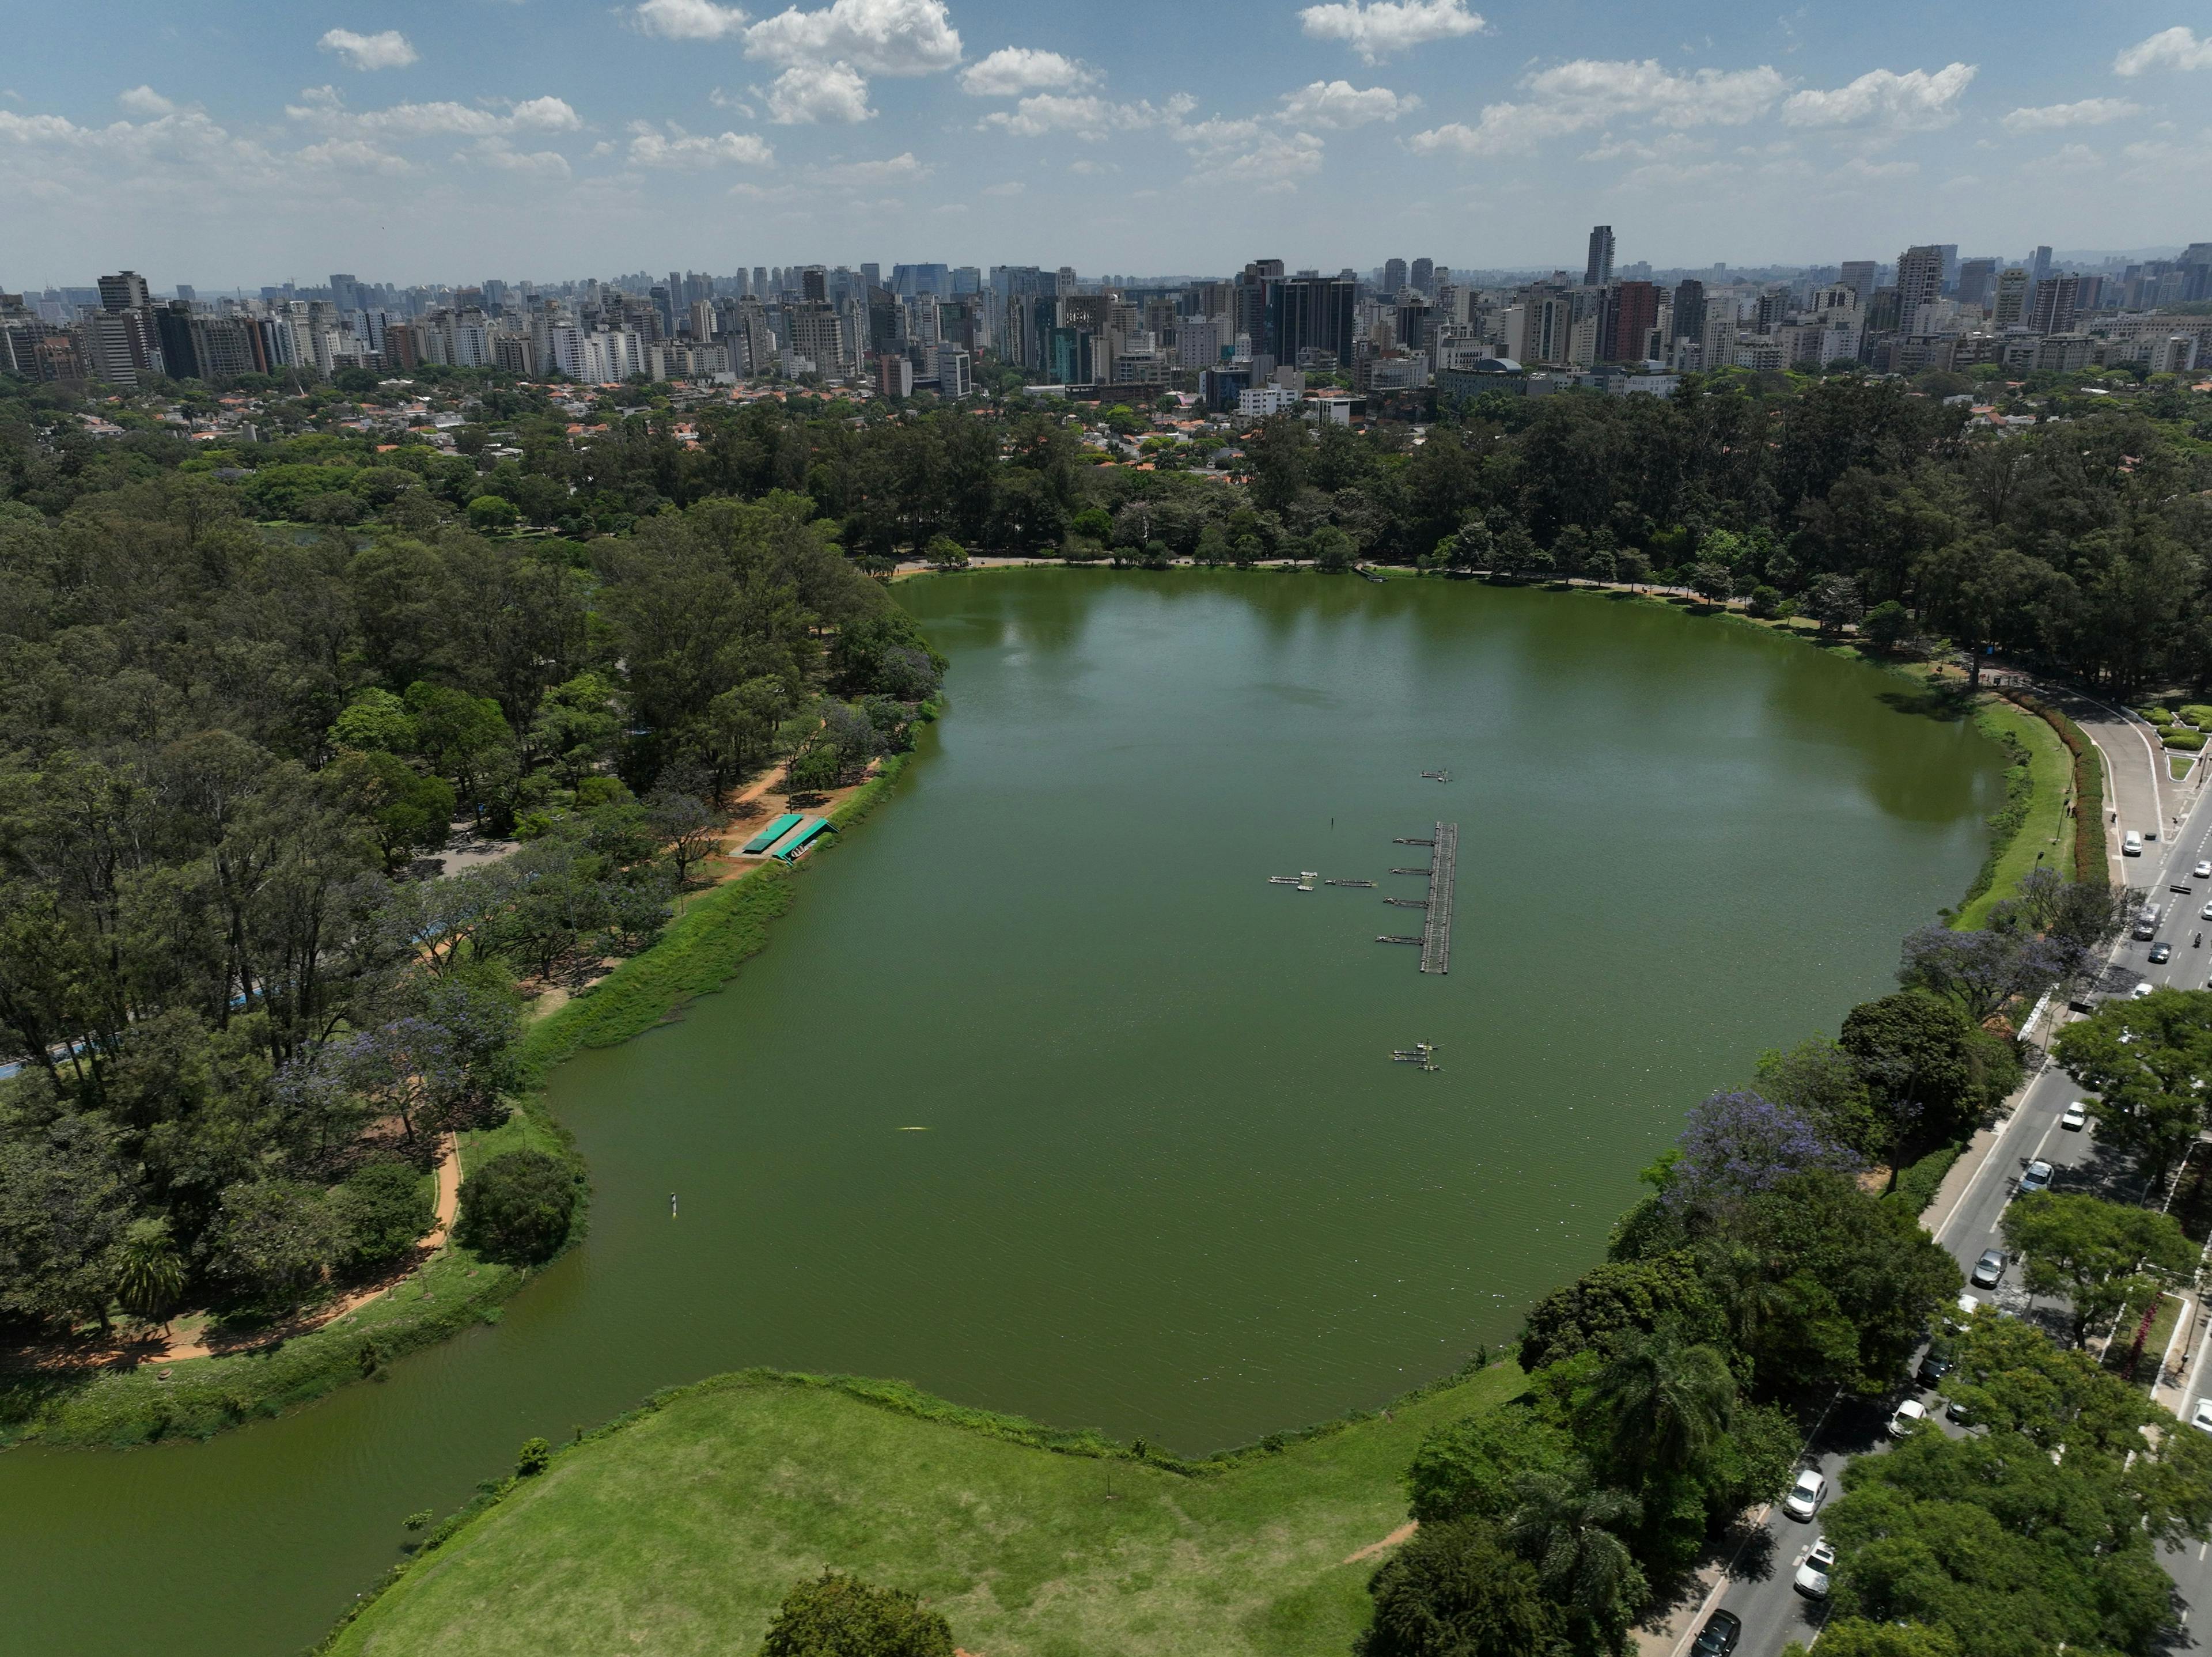 Agenda cultural em São Paulo: Parque Ibirapuera inaugura exposição de infláveis na Oca e recebe o maior evento de música clássica do país no Auditório e Horto Florestal realiza atividades para o público infantil